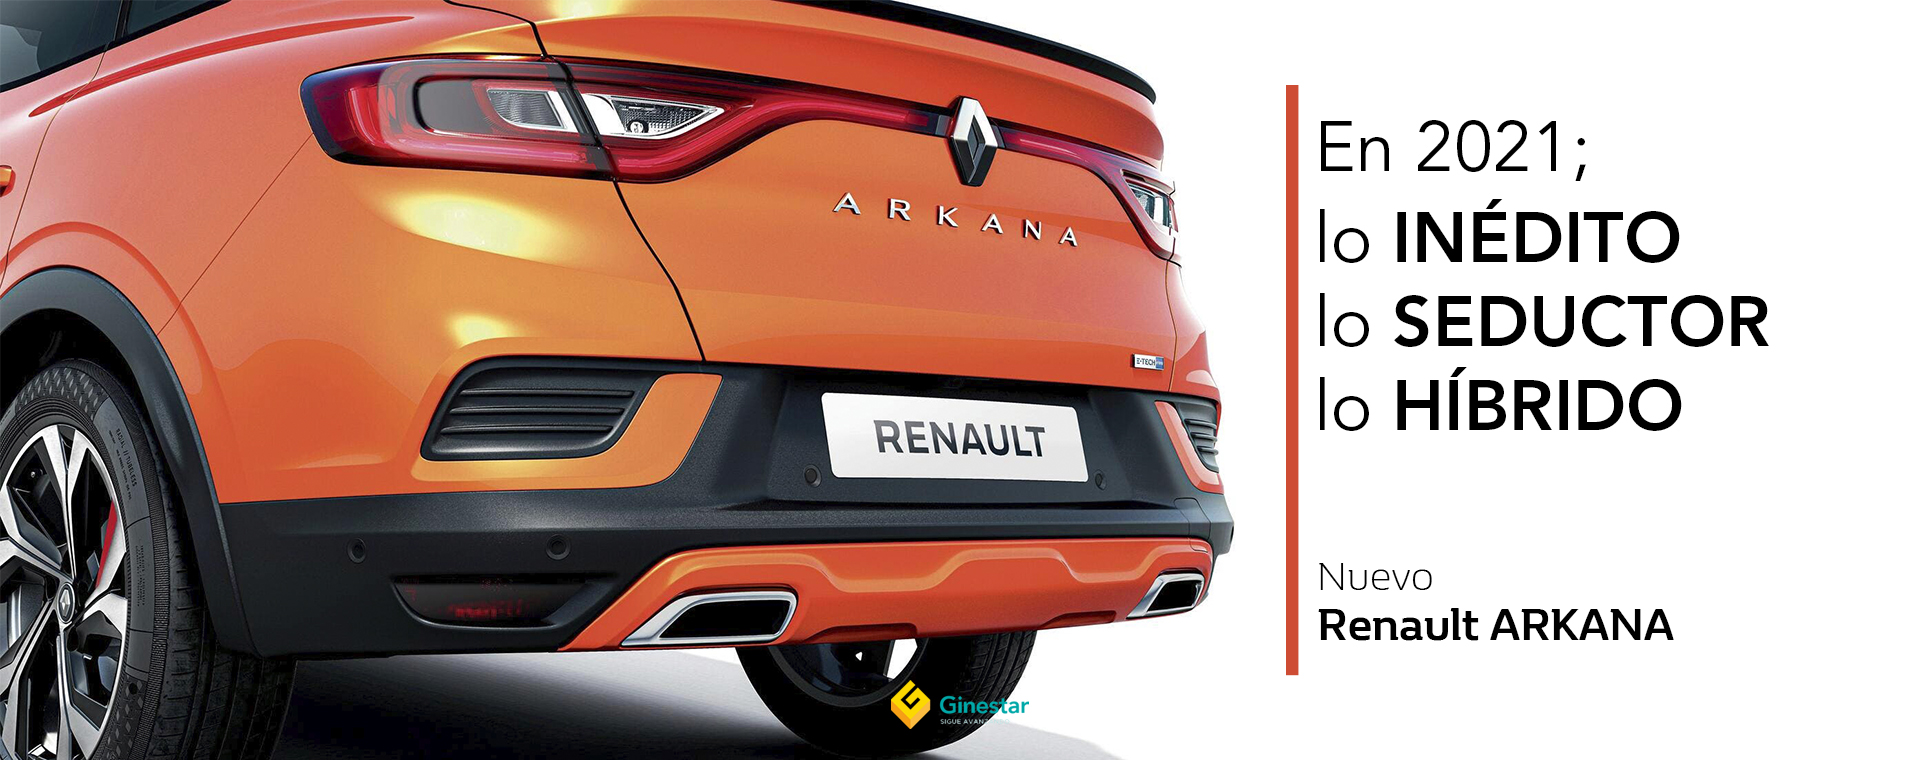 Oficial: Renault Arkana 2021, así es el nuevo SUV coupé